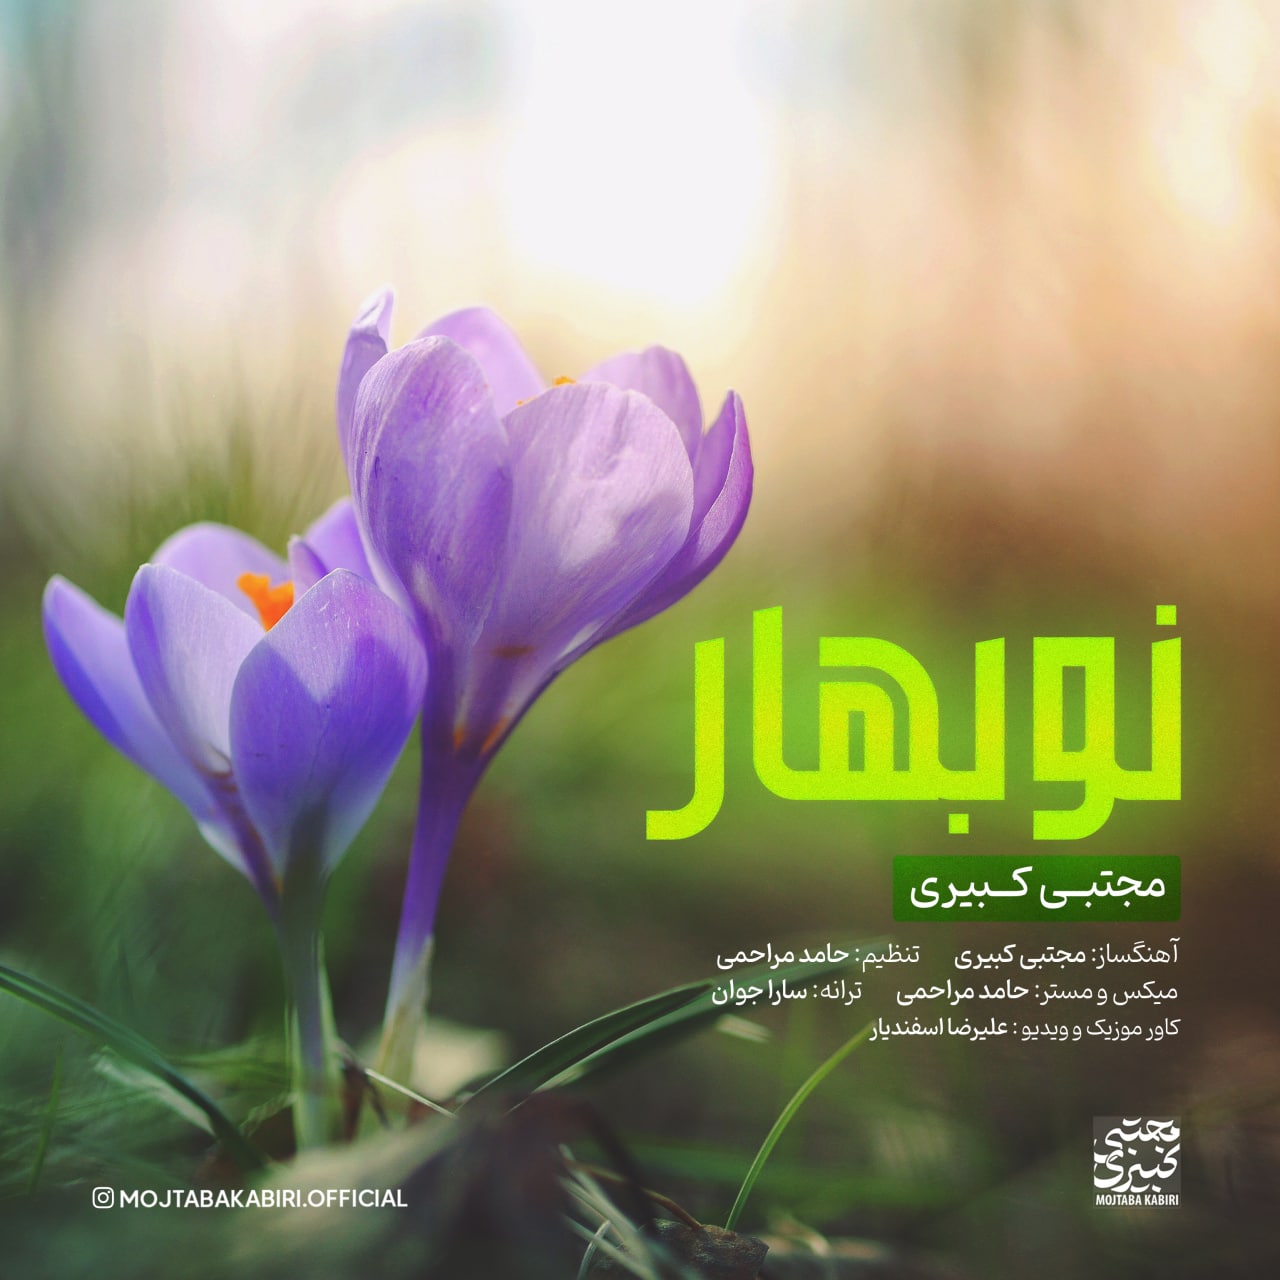 Mojtaba Kabiri - Eydaneh - دانلود آهنگ مجتبی کبیری به نام عیدانه 